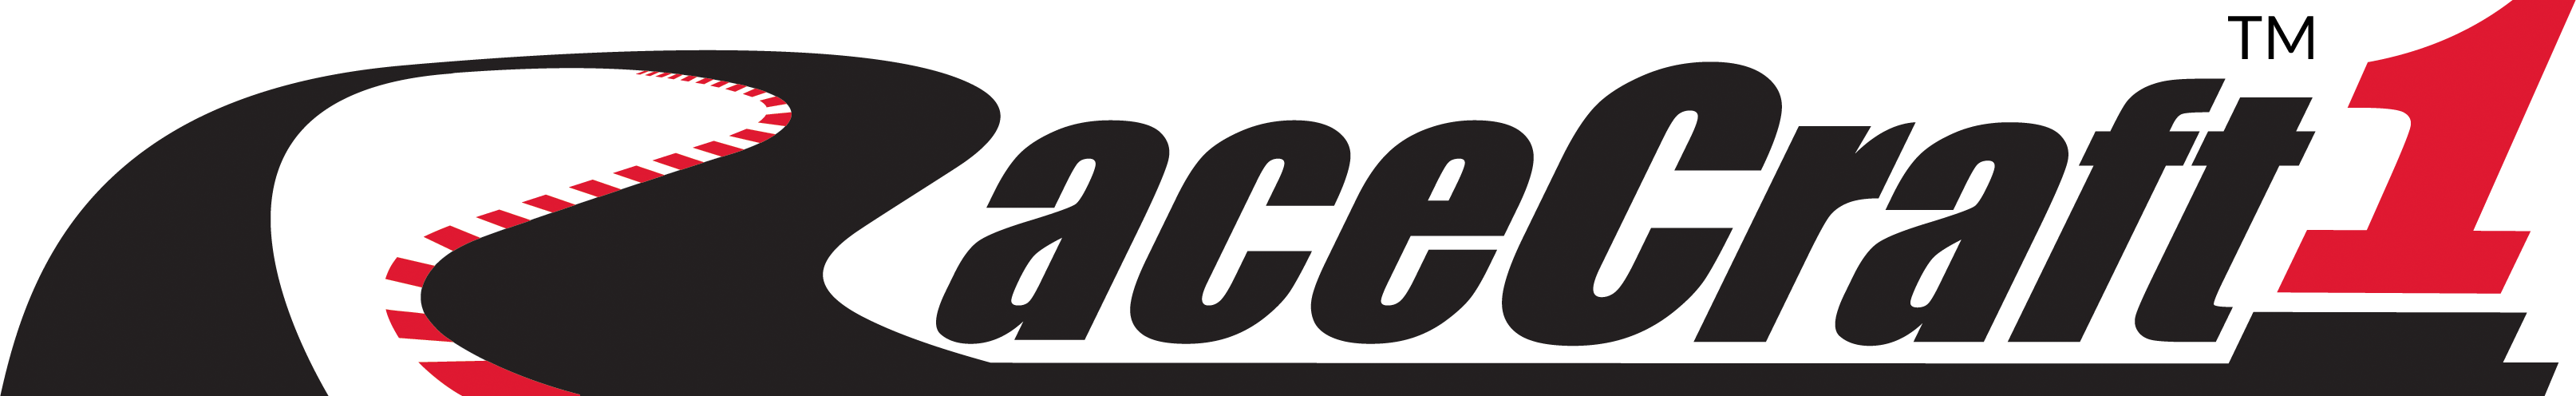 RaceCraft1 Positive Logo, TM